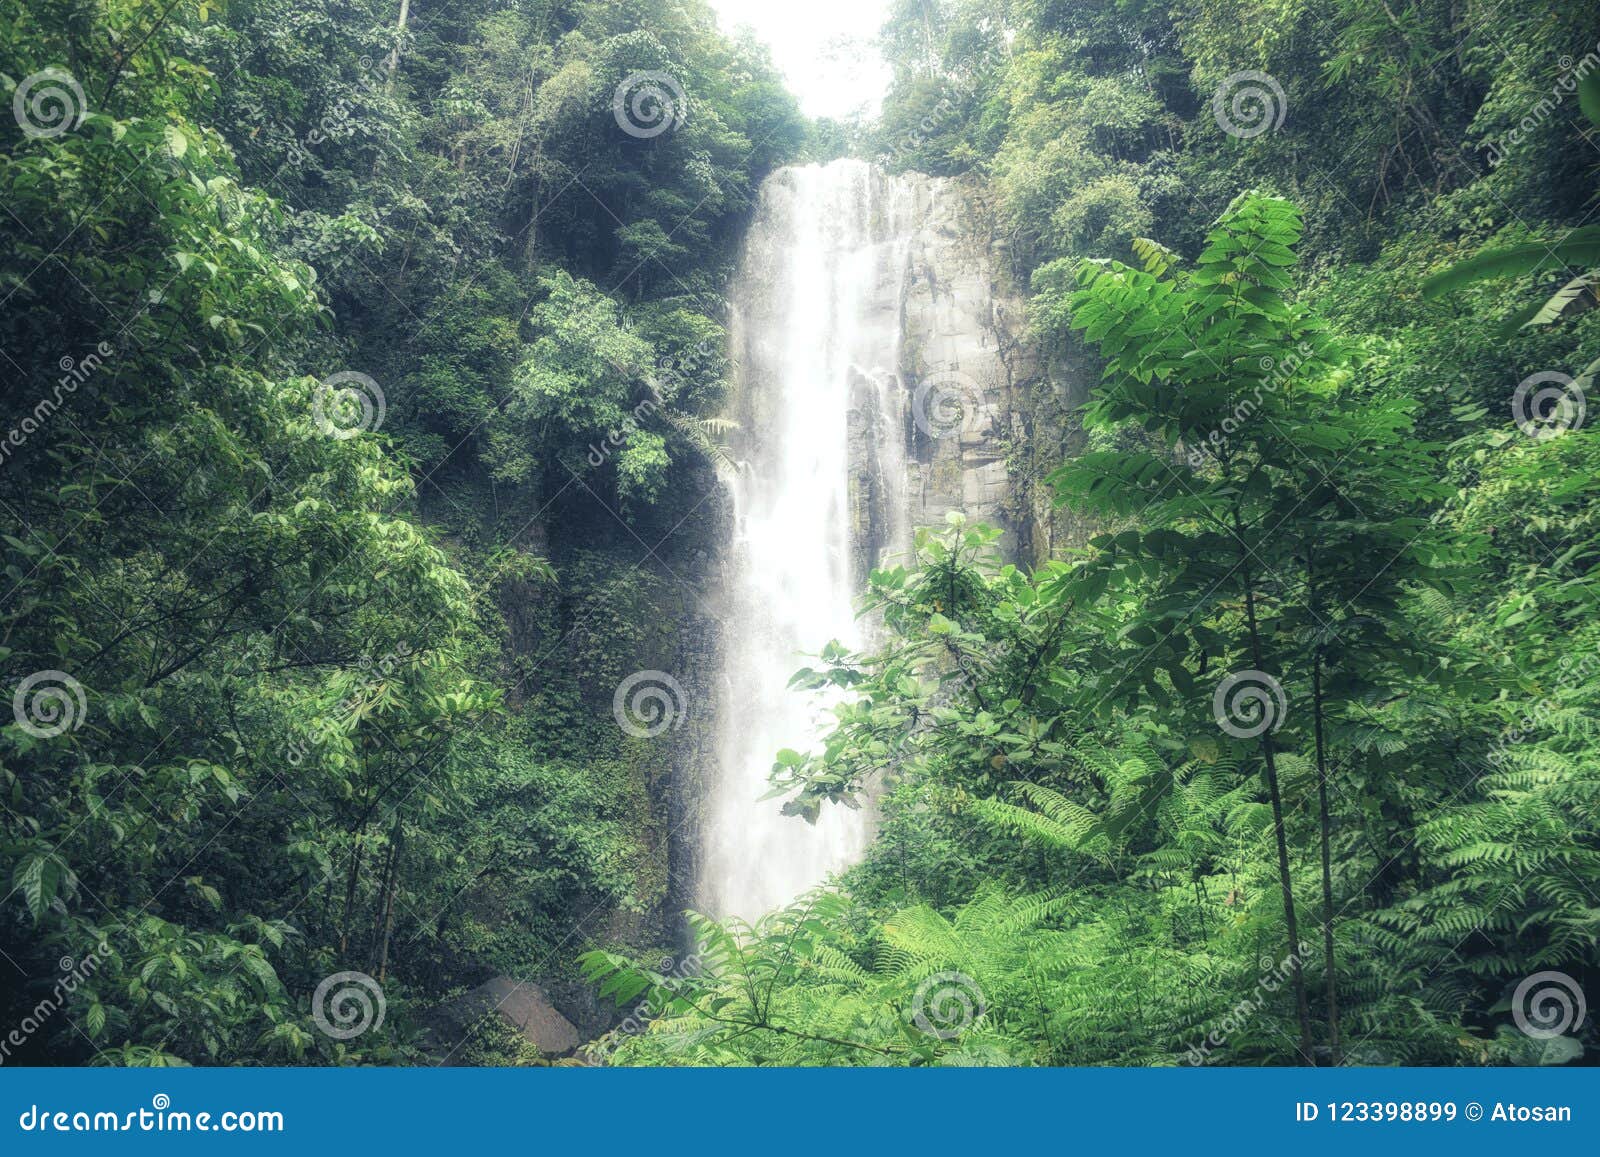 a small and beautifull tomohon selatan waterfall in sulawesi, ma